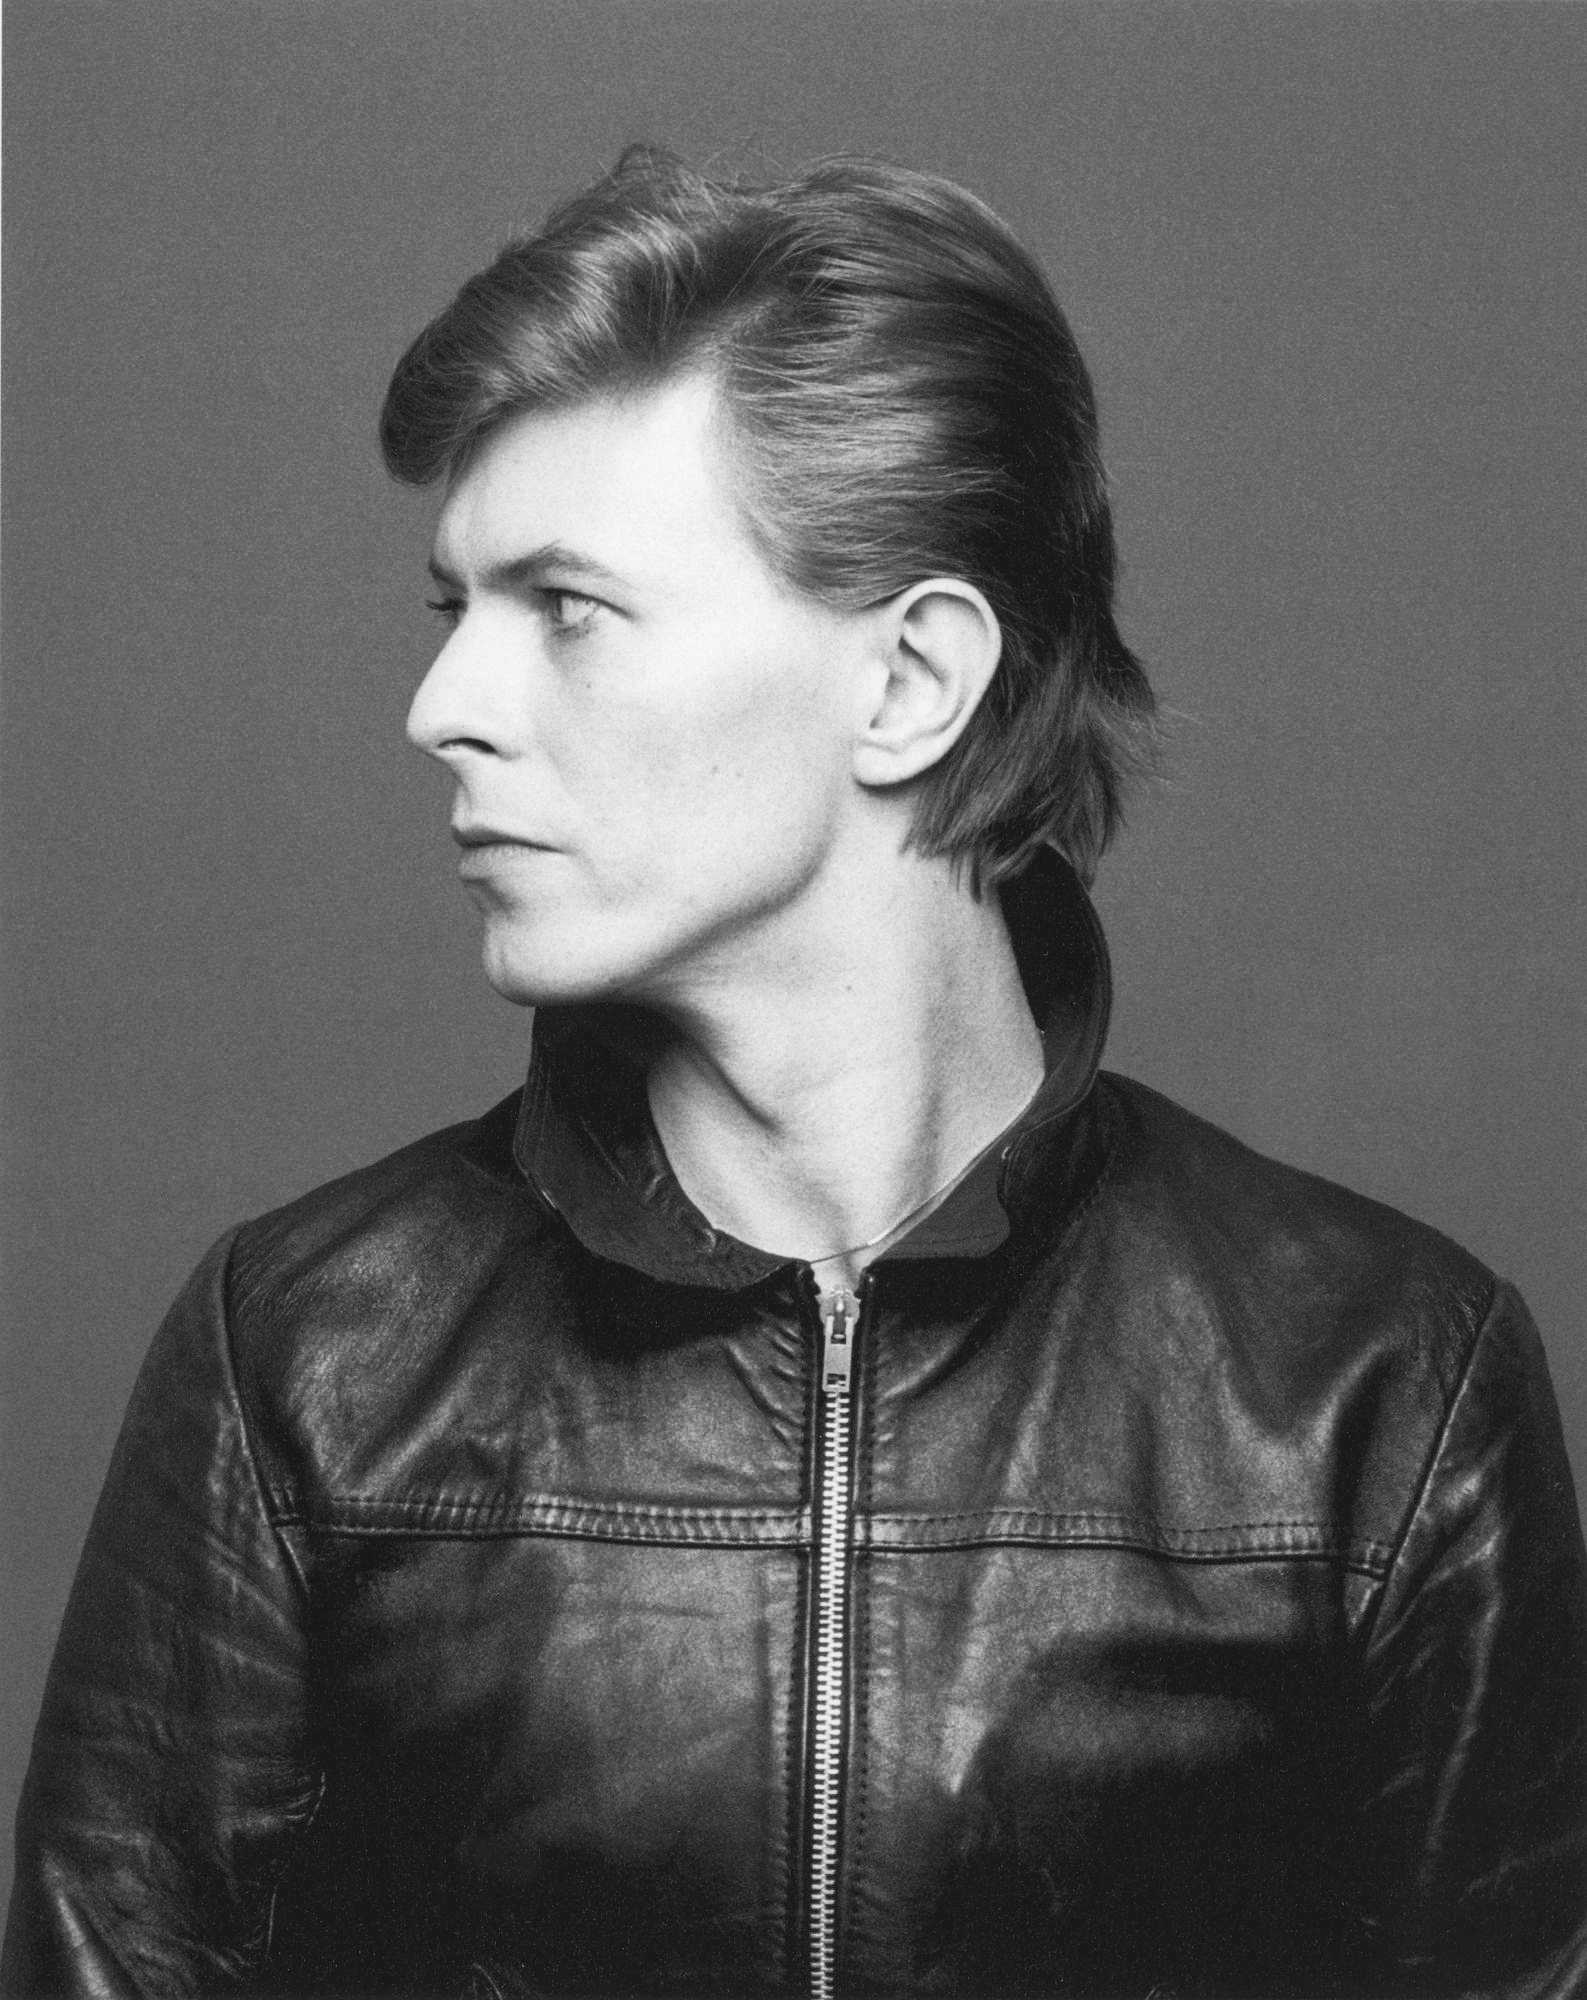 For Me, David Bowie Lives On - GARAGE